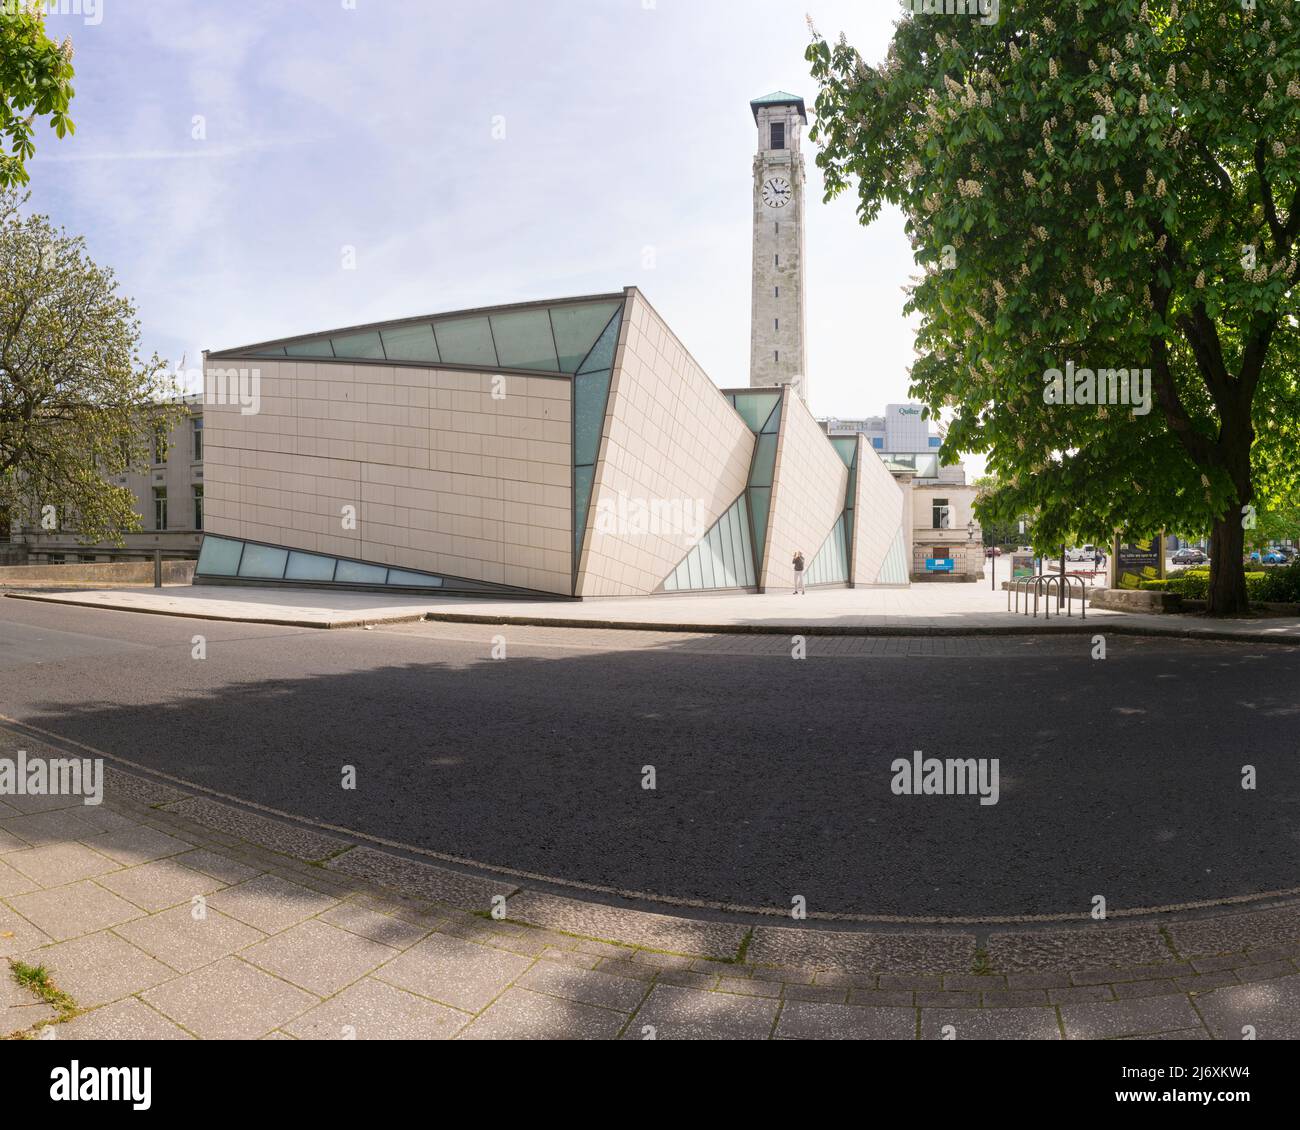 Le Musée SeaCity du centre civique de Southampton, en Angleterre, a ouvert ses portes en 2012 à l'occasion du centenaire du départ de RMS Titanic. Banque D'Images